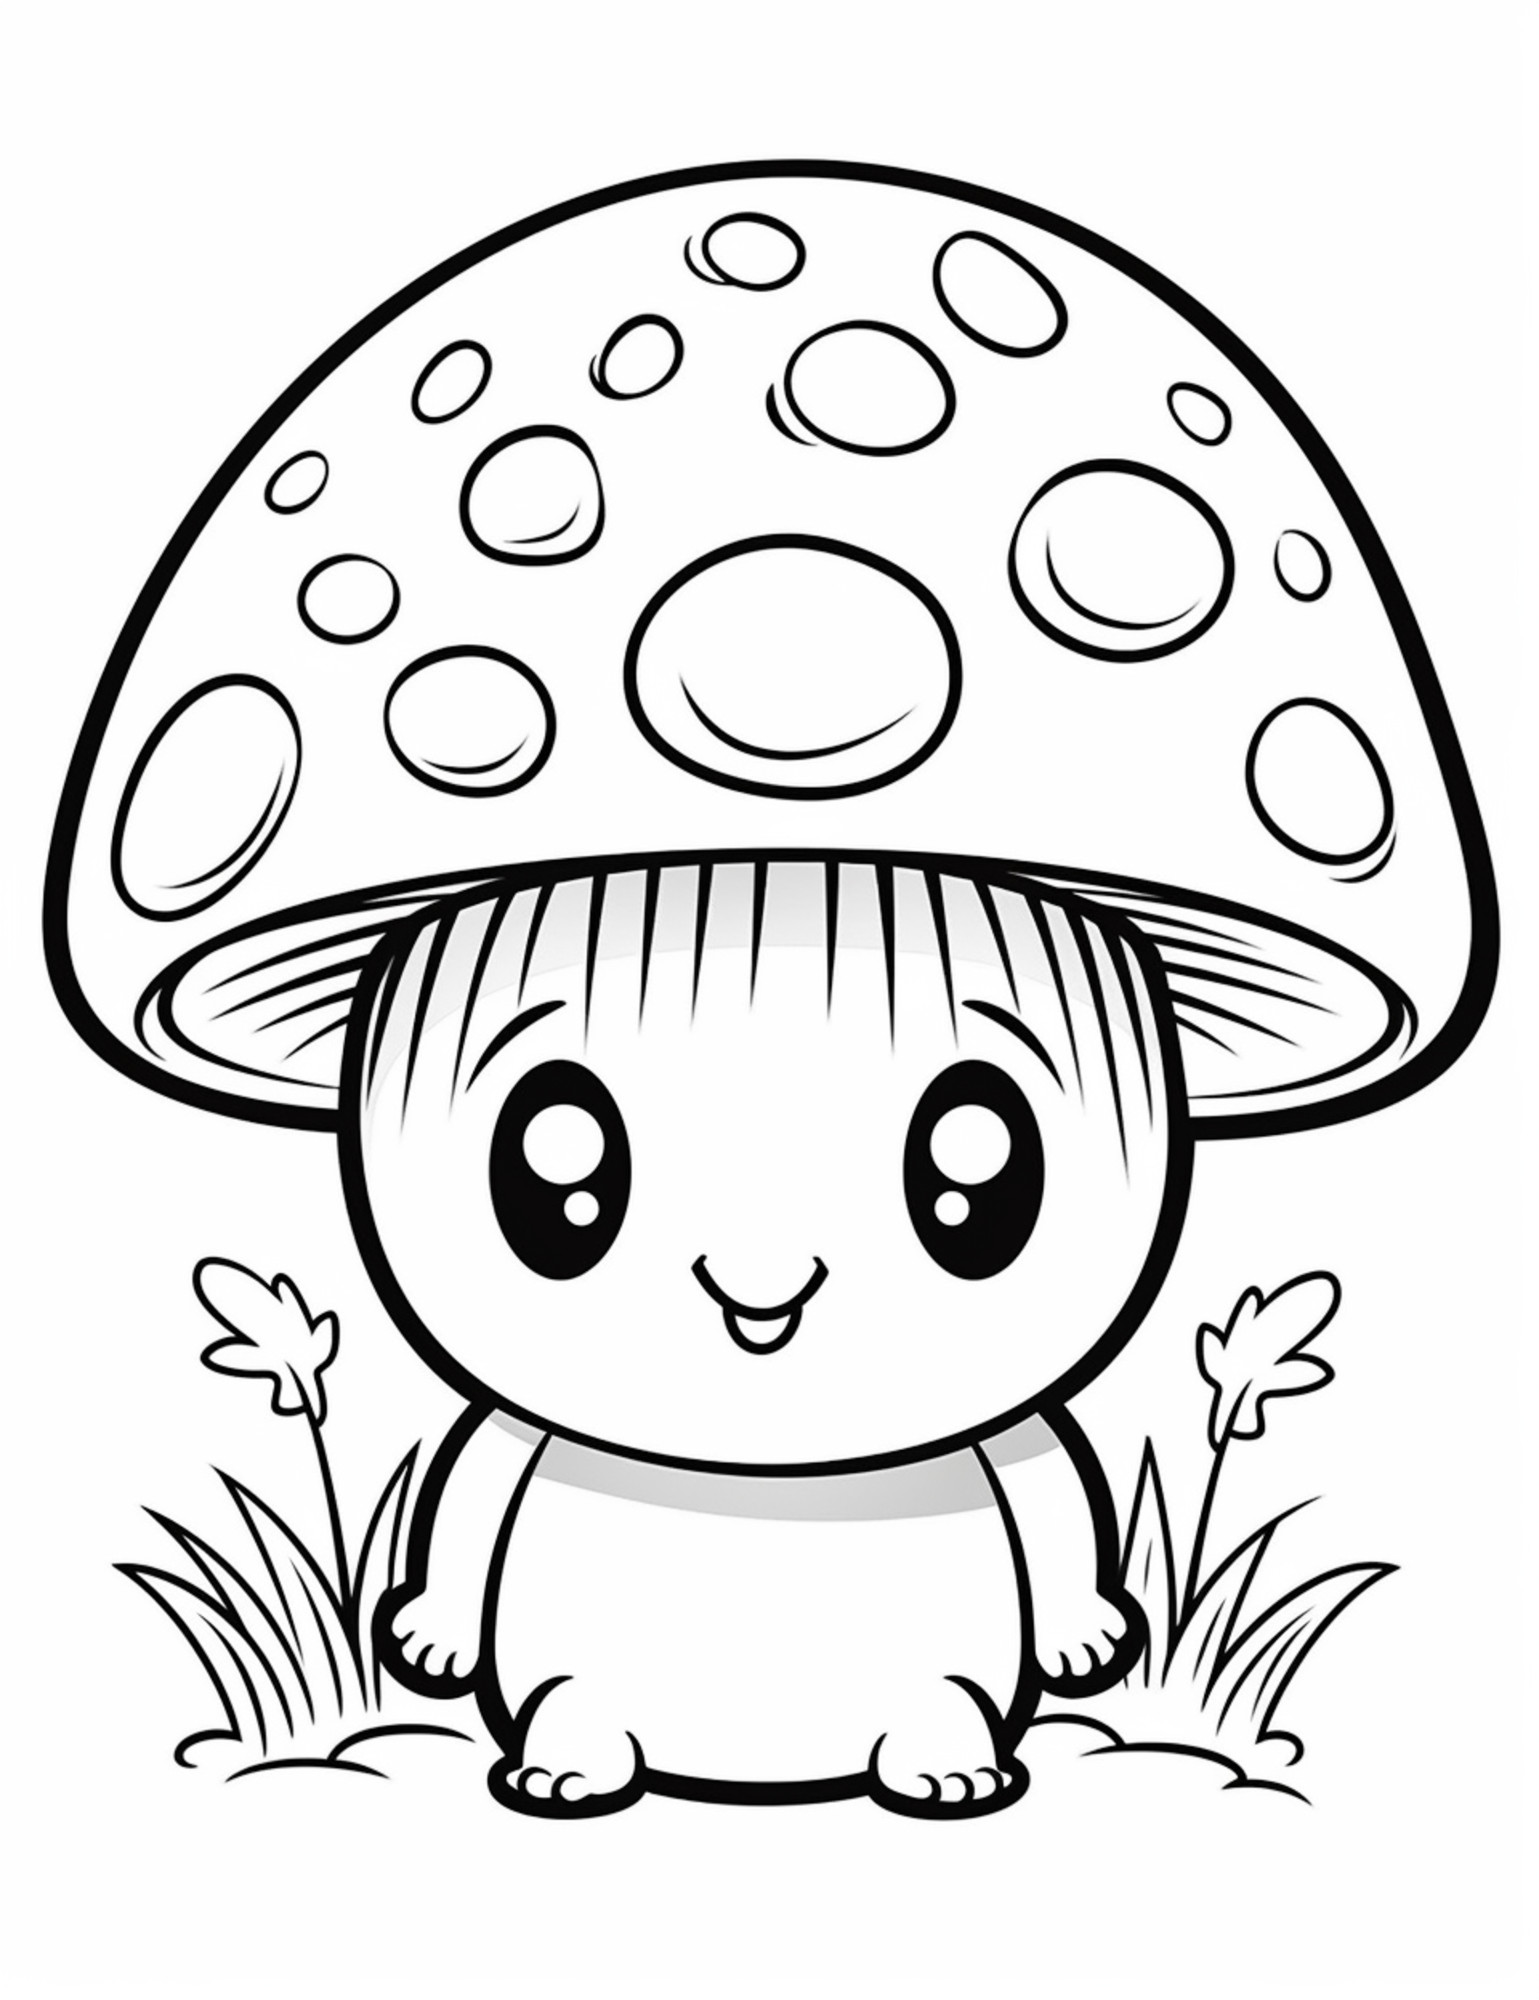 Раскраска для детей: гриб с лицом